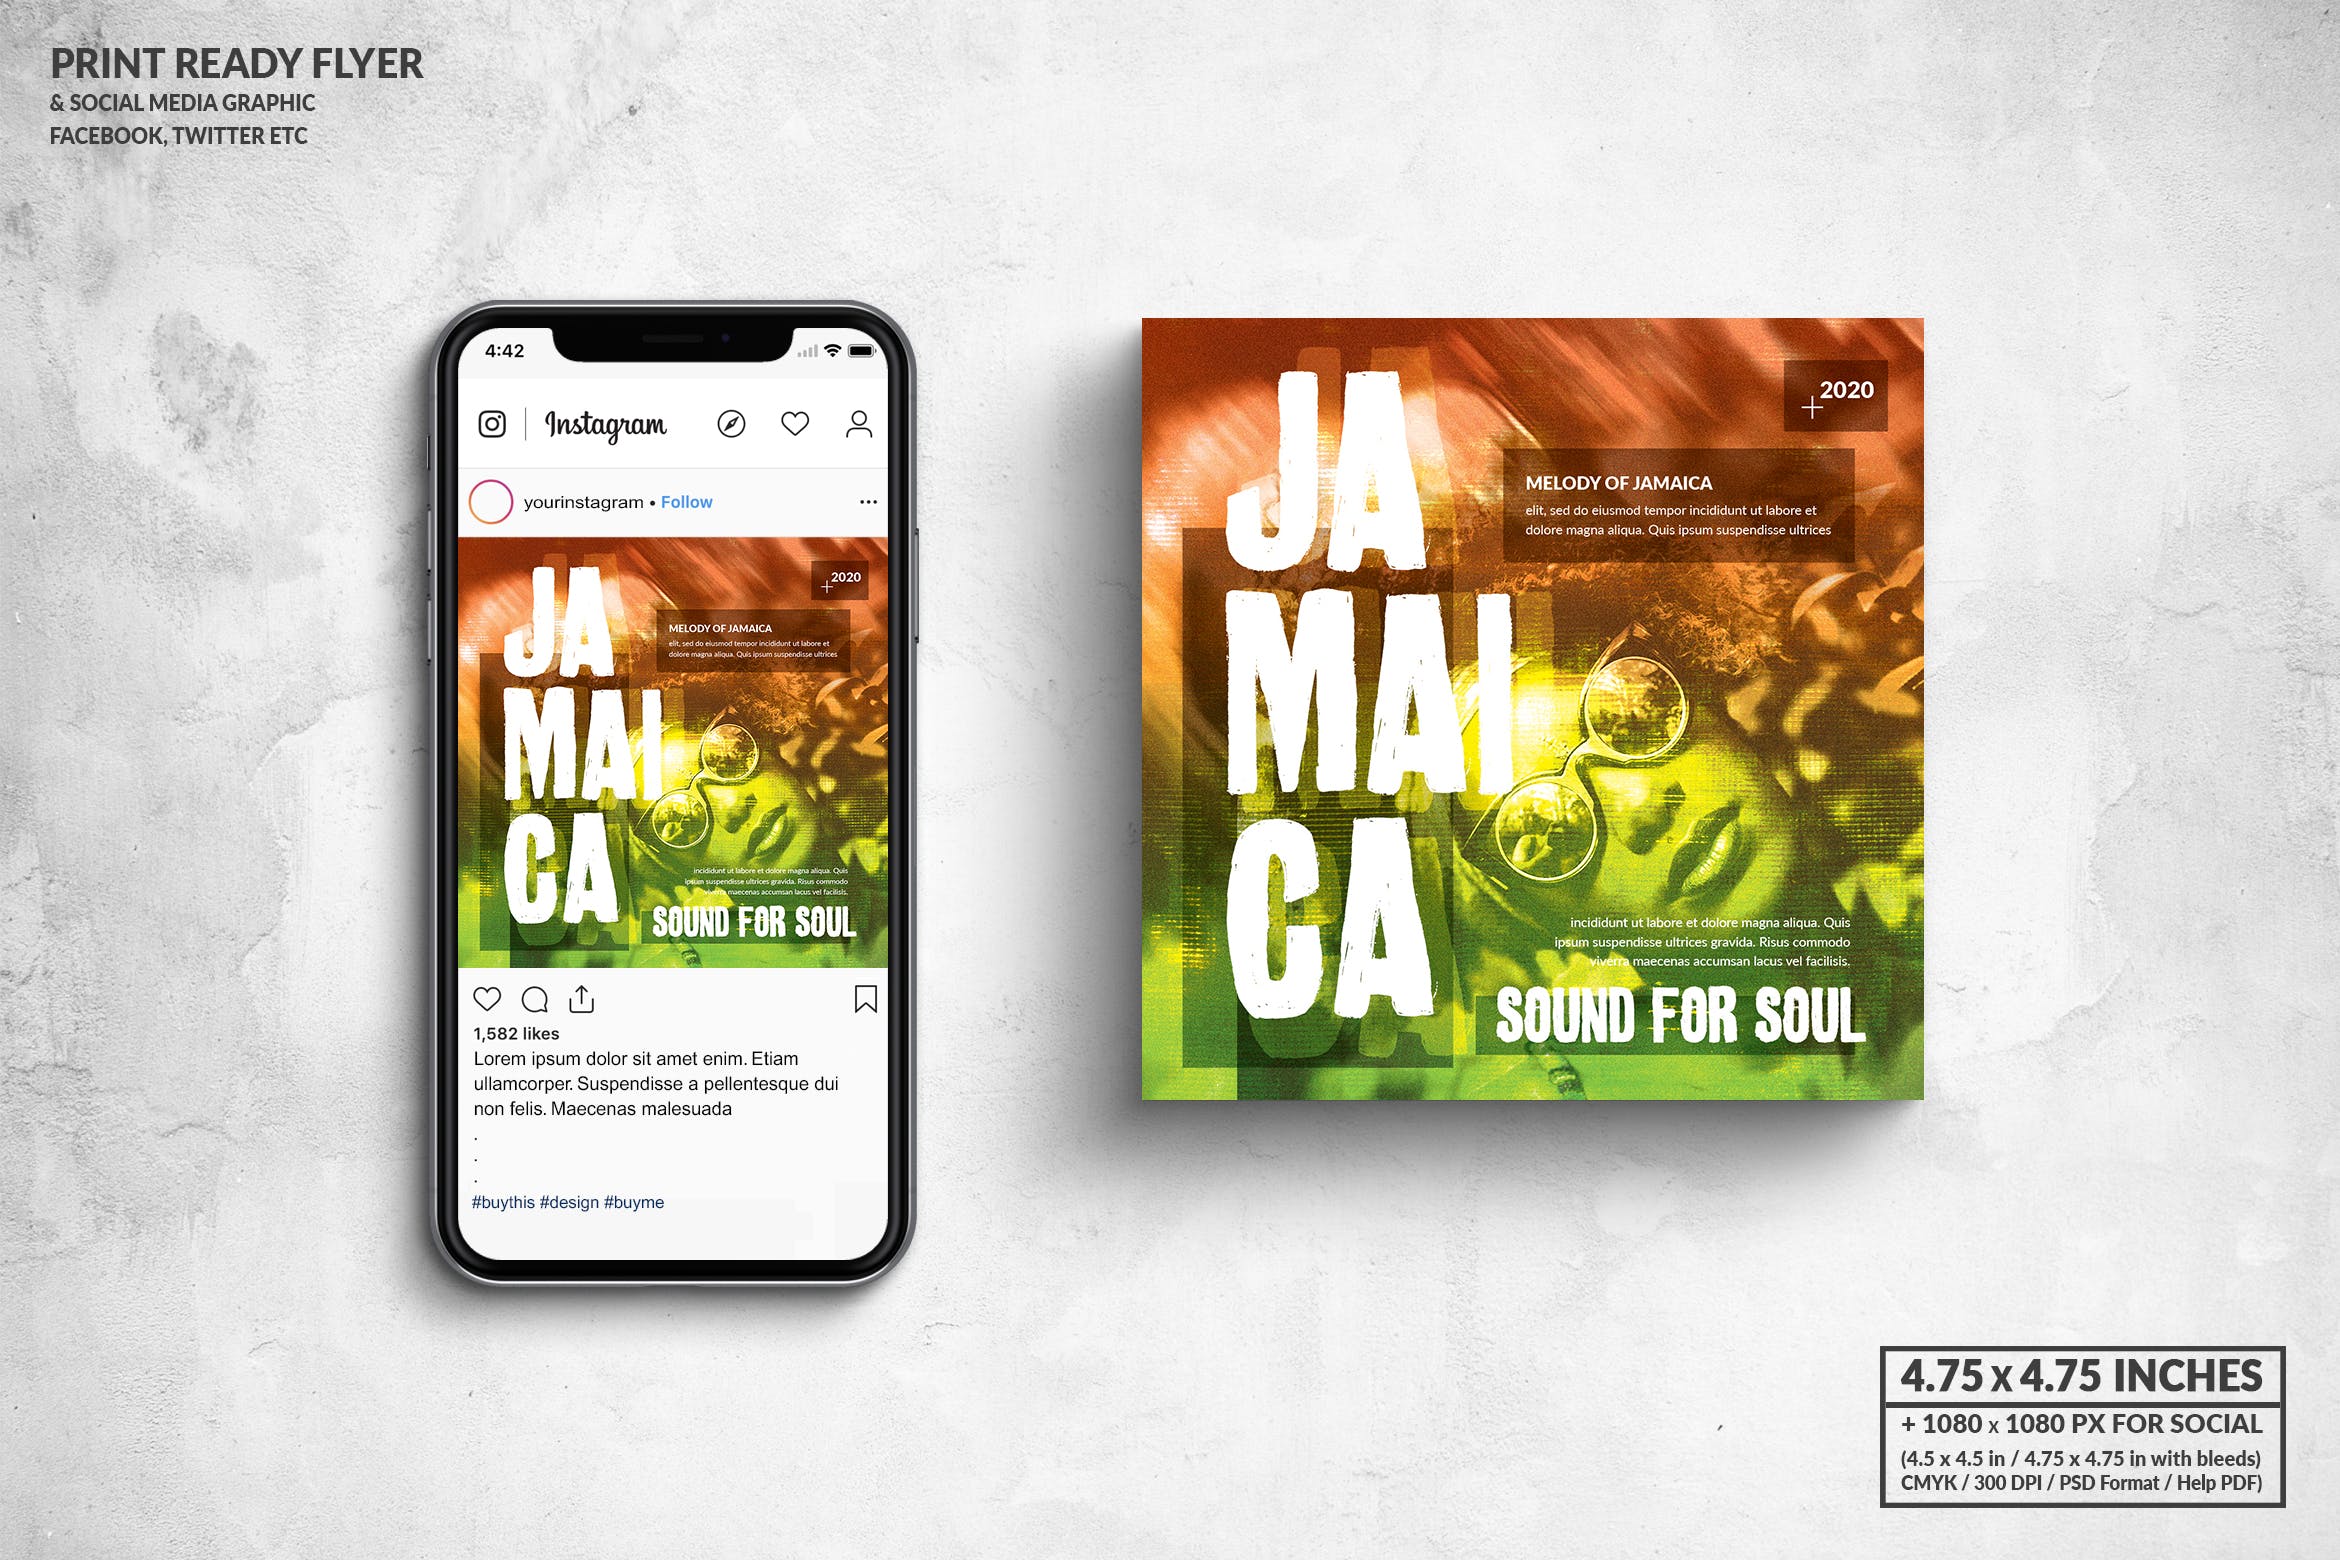 灵魂音乐主题活动宣传单&社交广告设计模板 Jamaica Music Square Flyer & Social Media Post插图